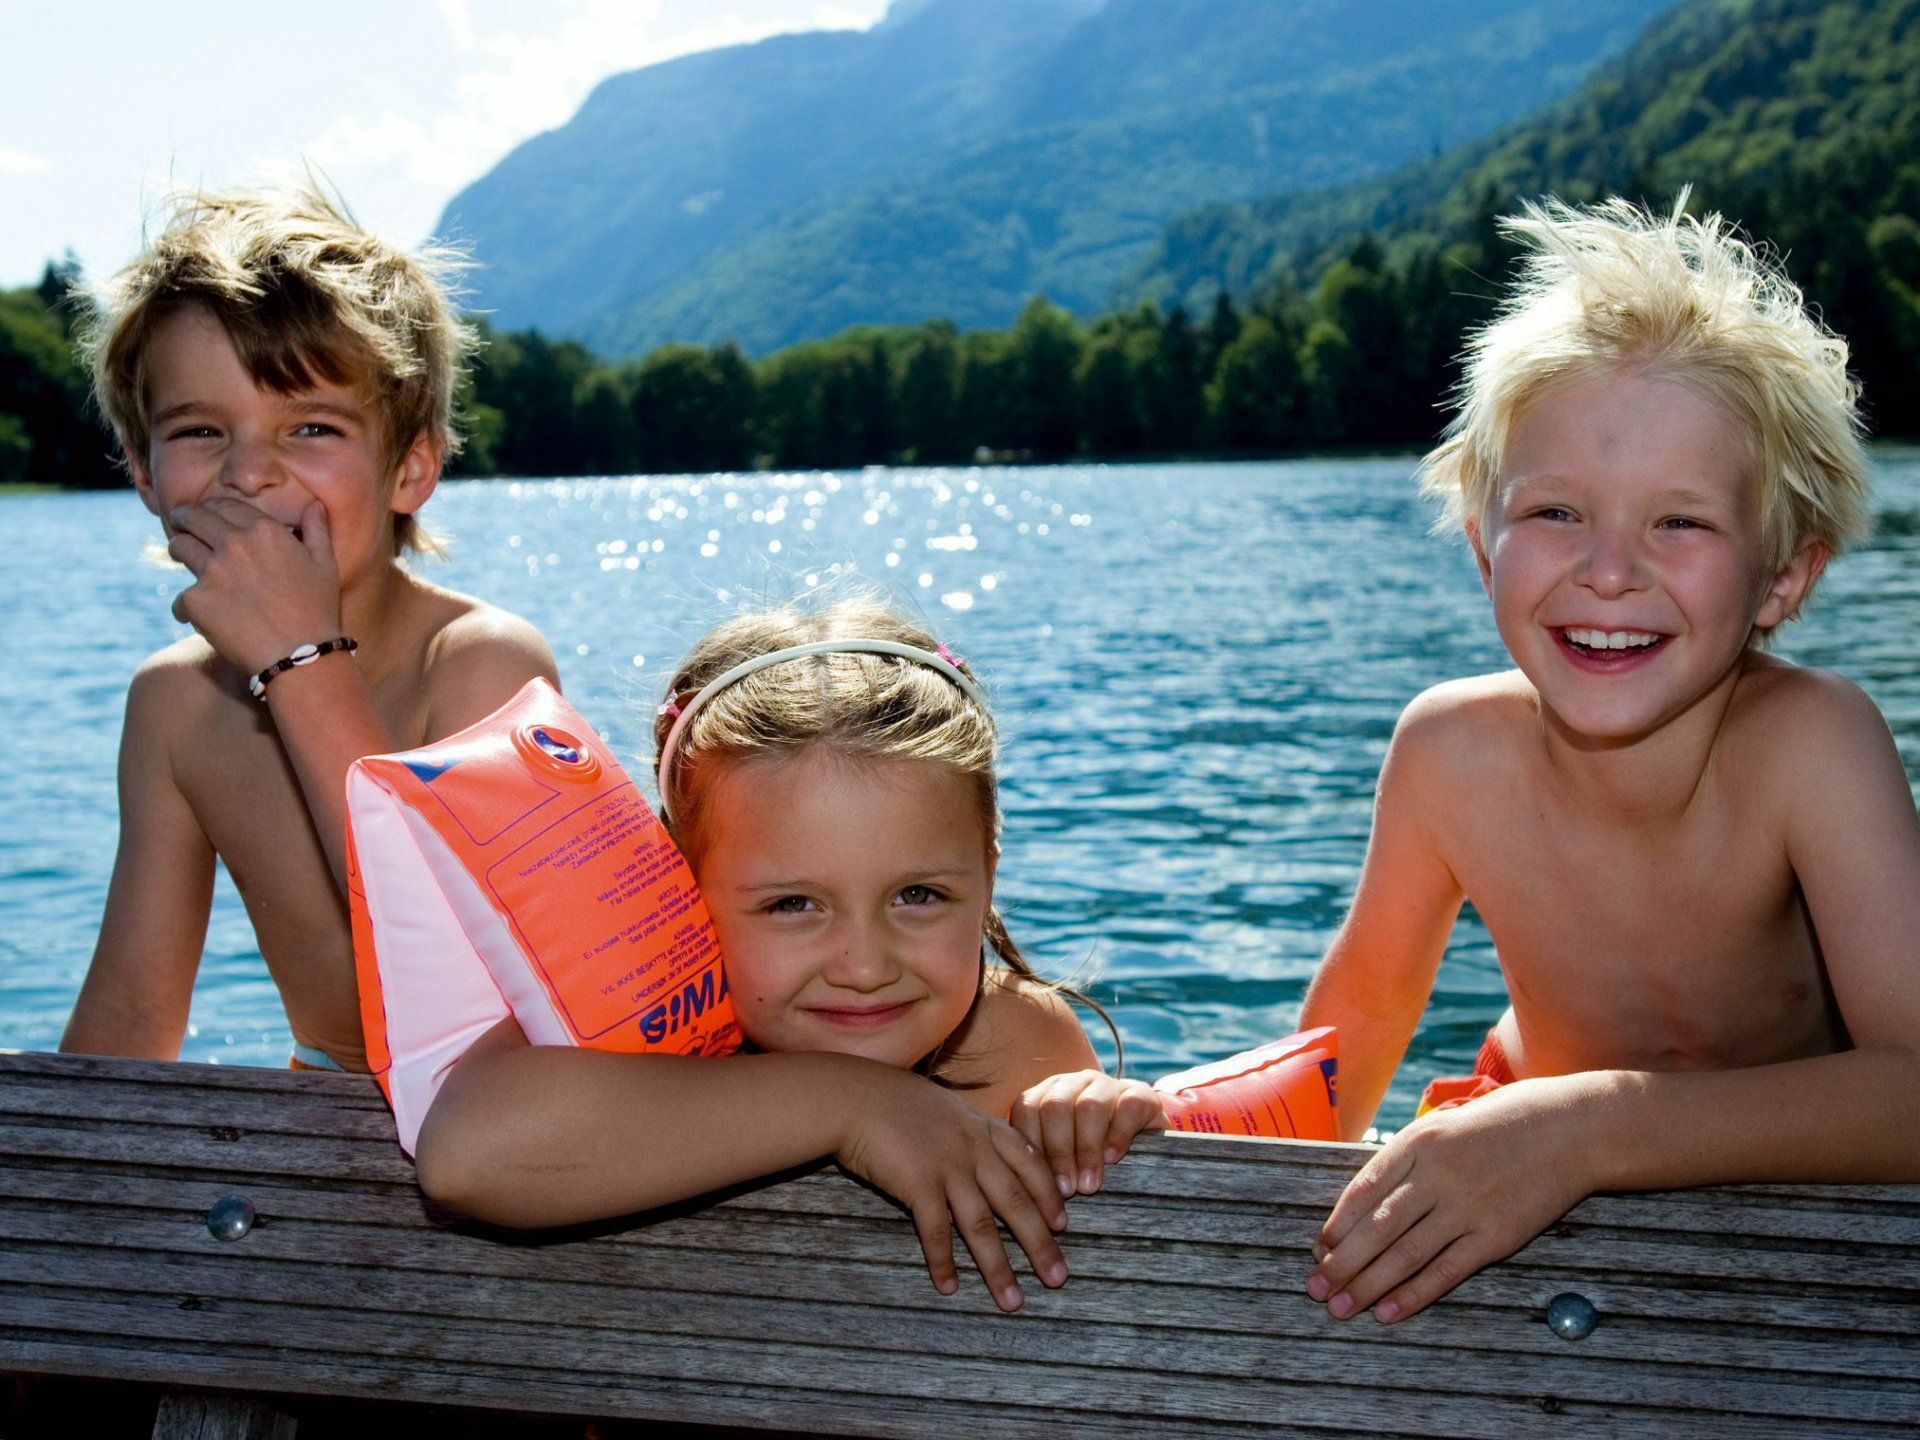 Kinder auf einer Holzbank an einem See.